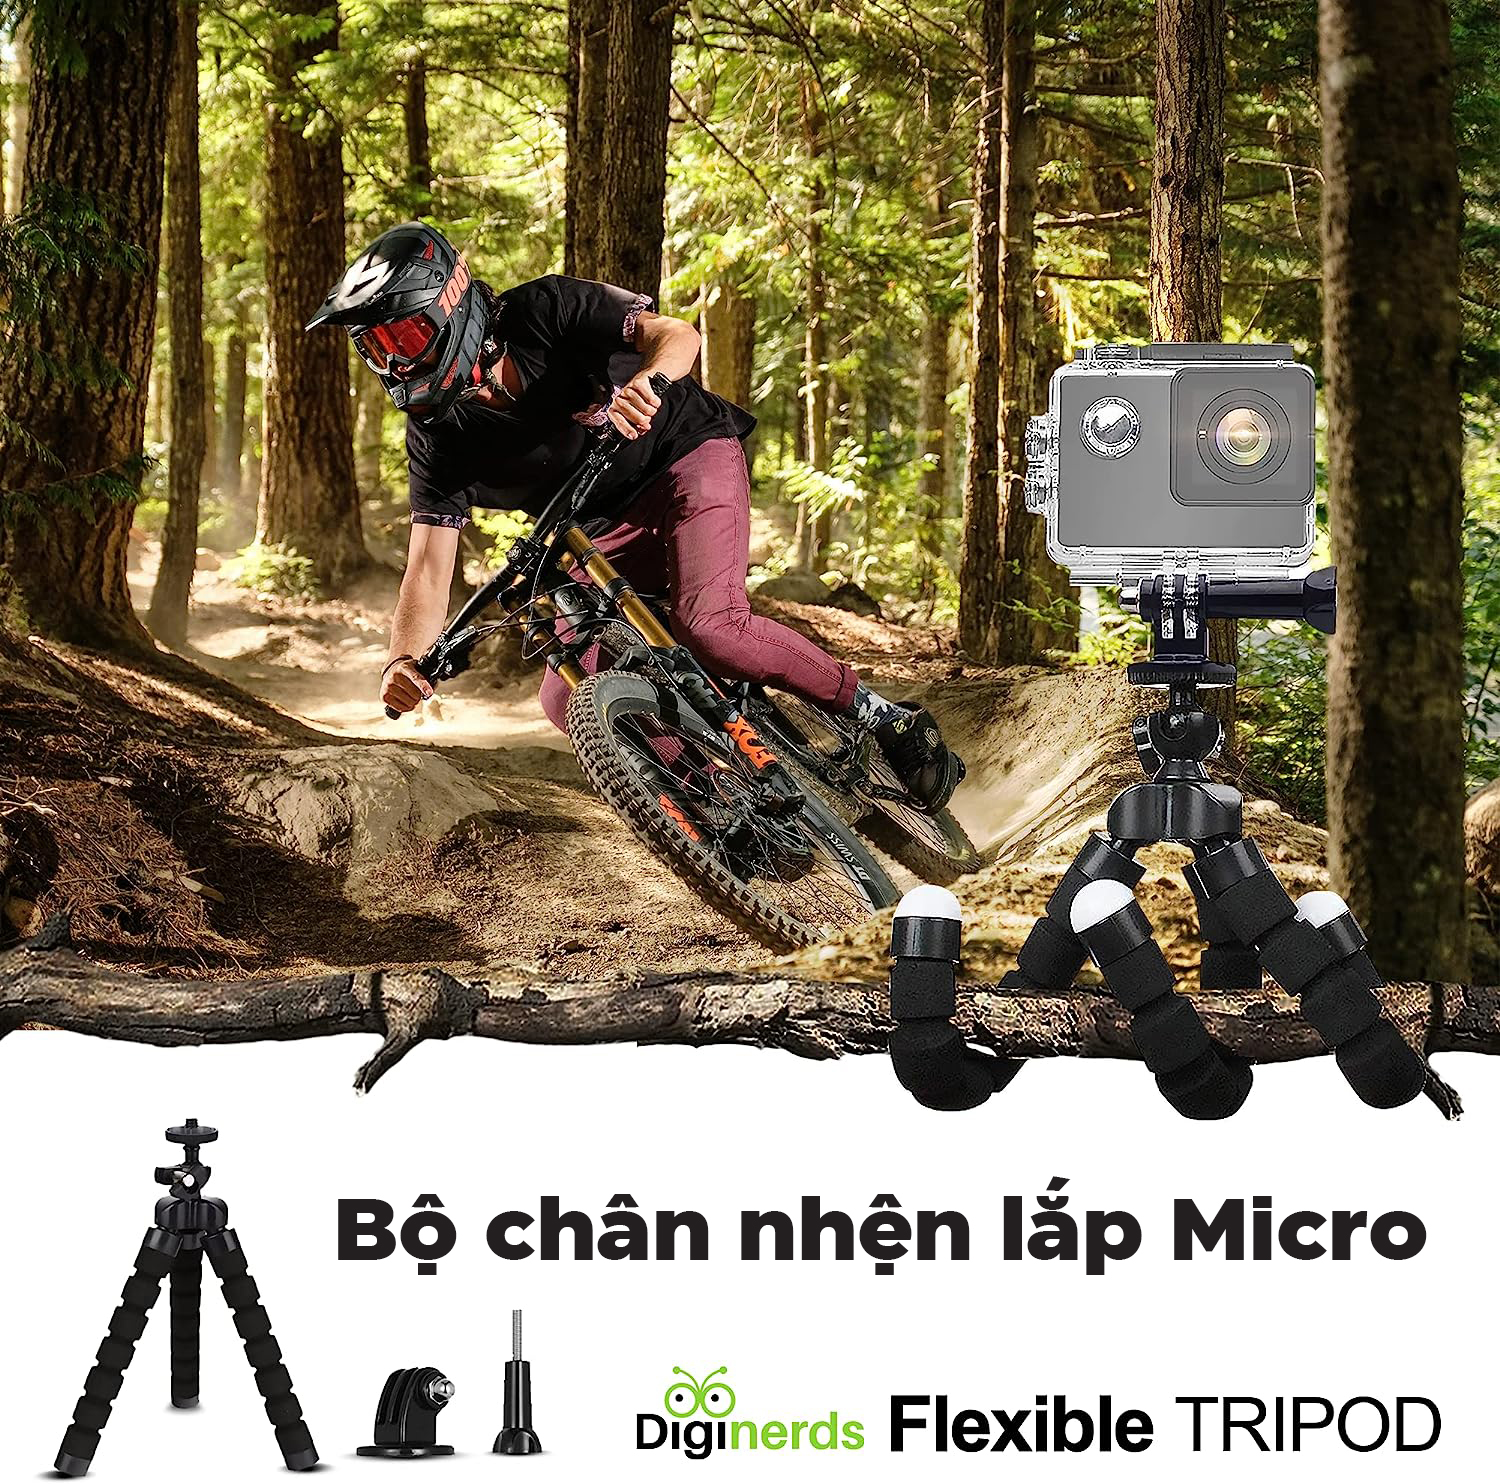 Bộ phụ kiện camera hành động DigiNerds 50-in-1 - Hỗ trợ GoPro/Insta360/DJI Osmo Action